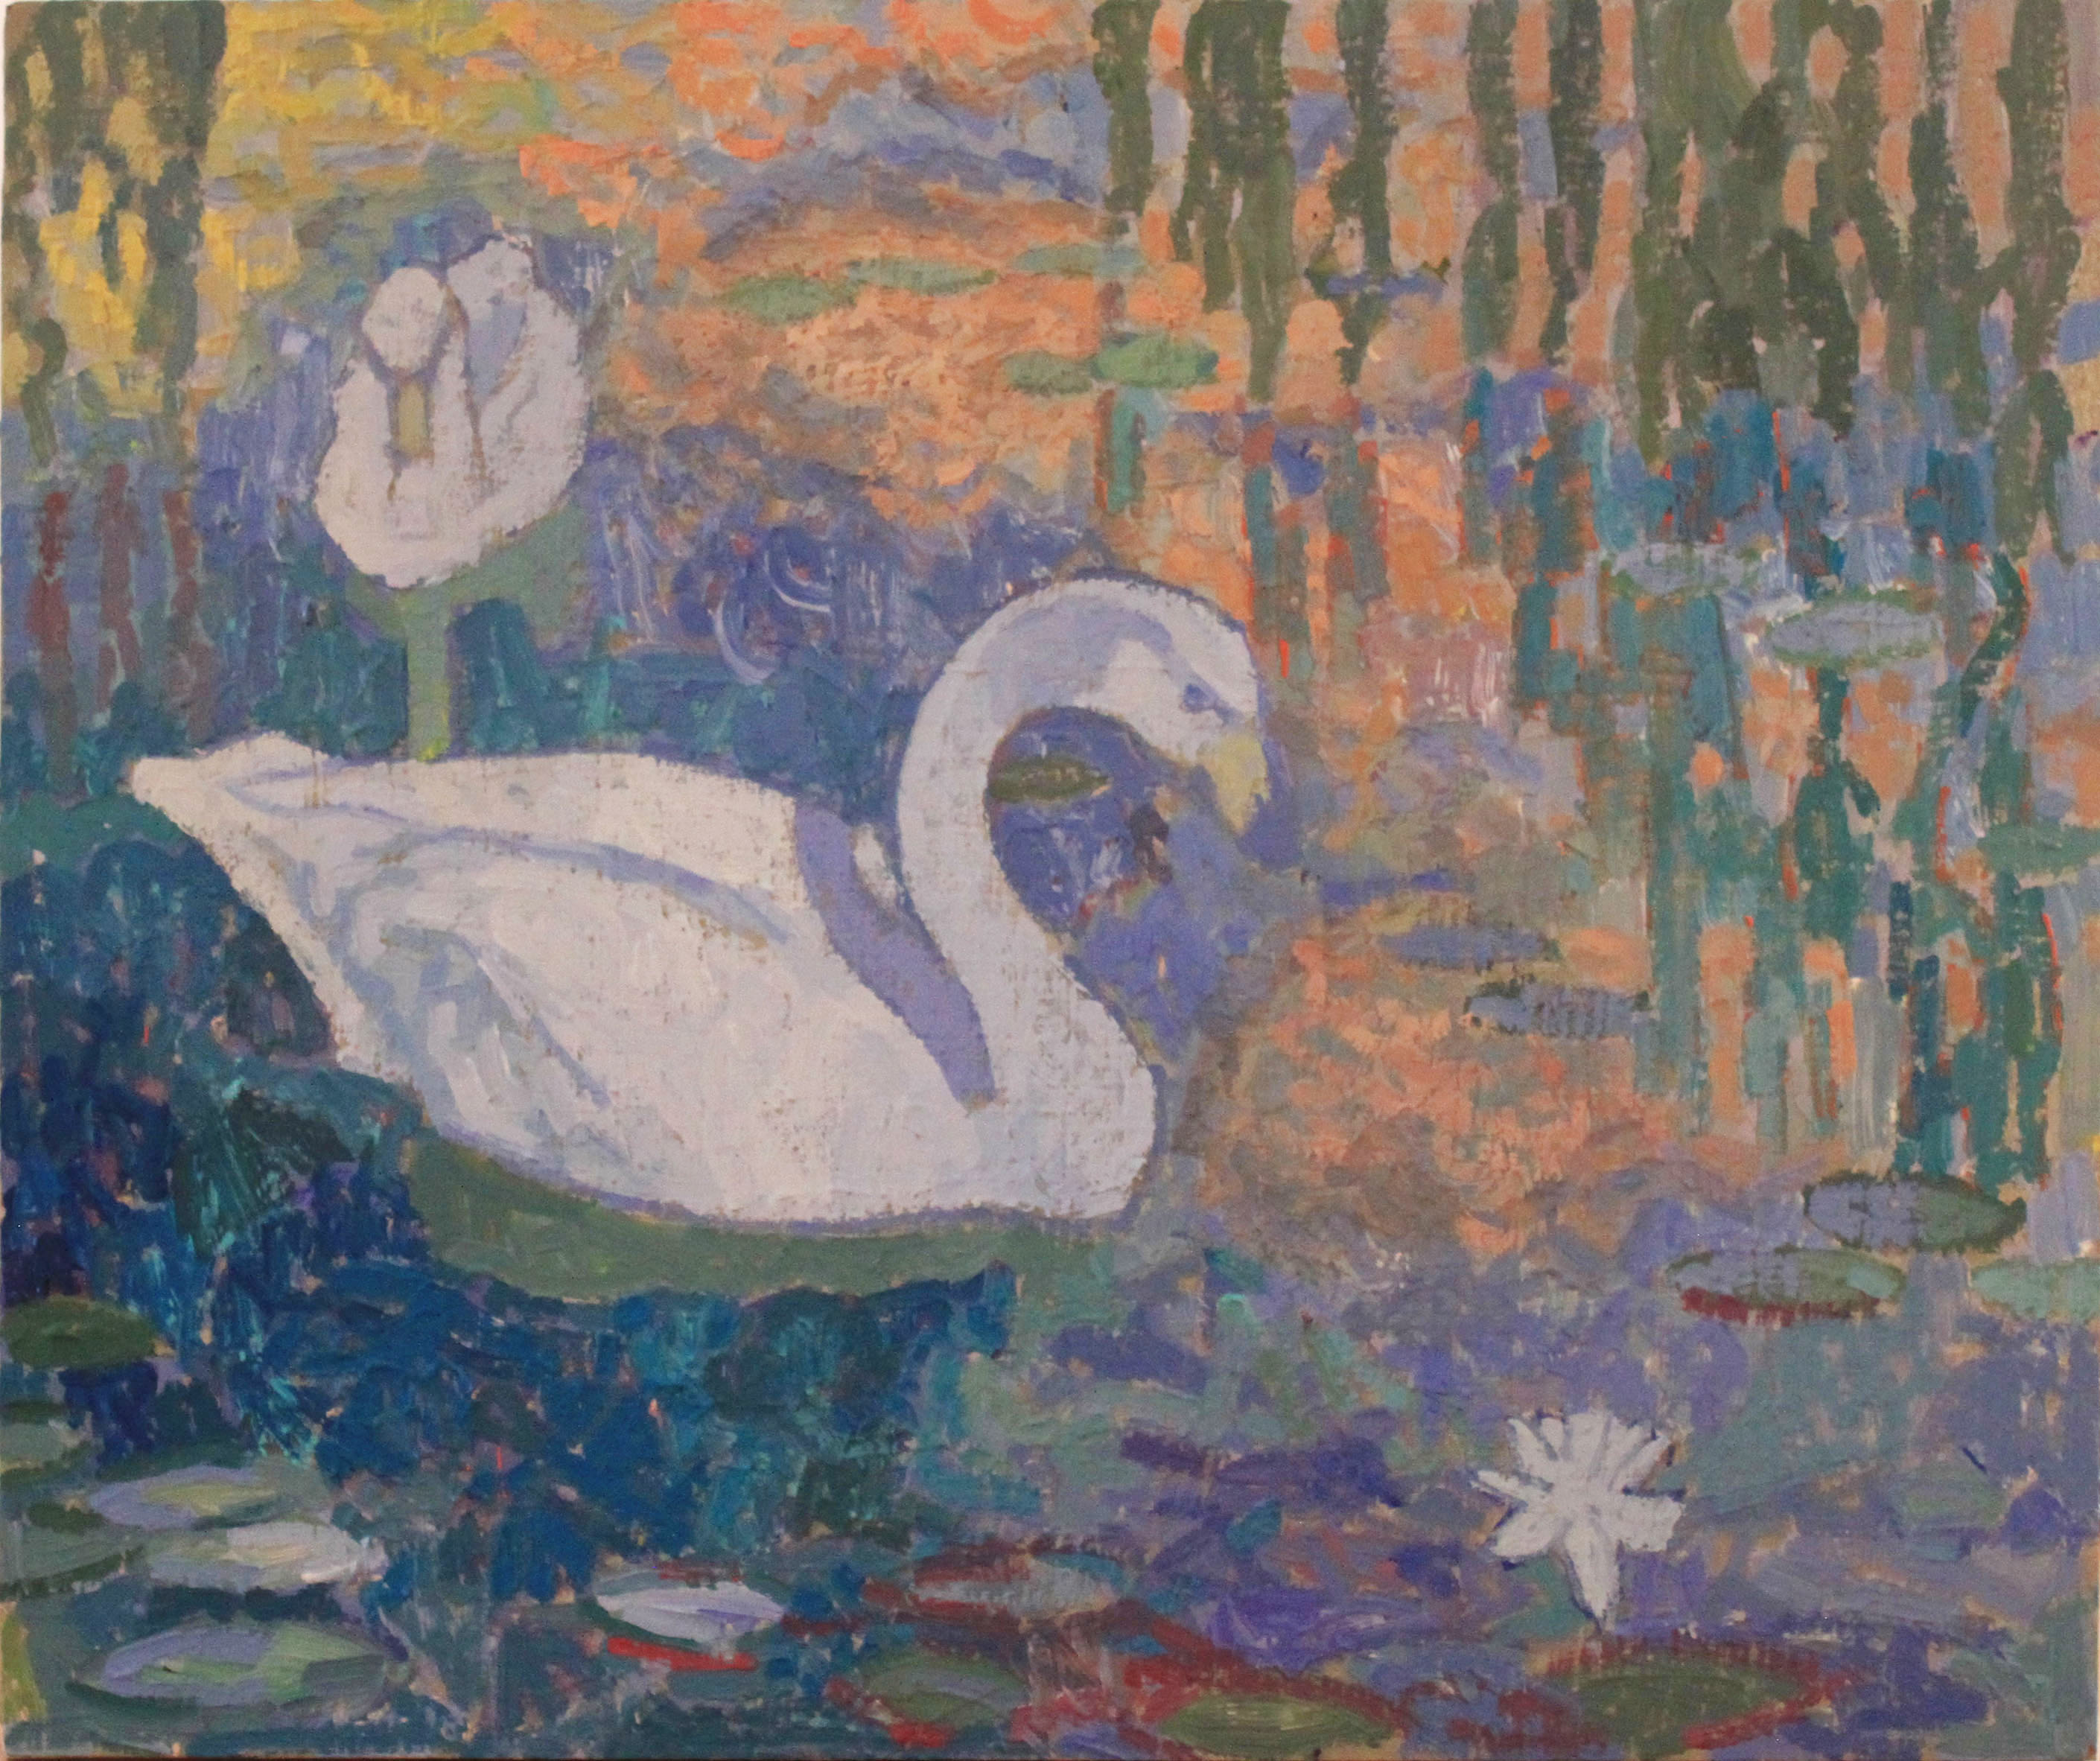 Swans, oil on wood, 10" x 12", $330